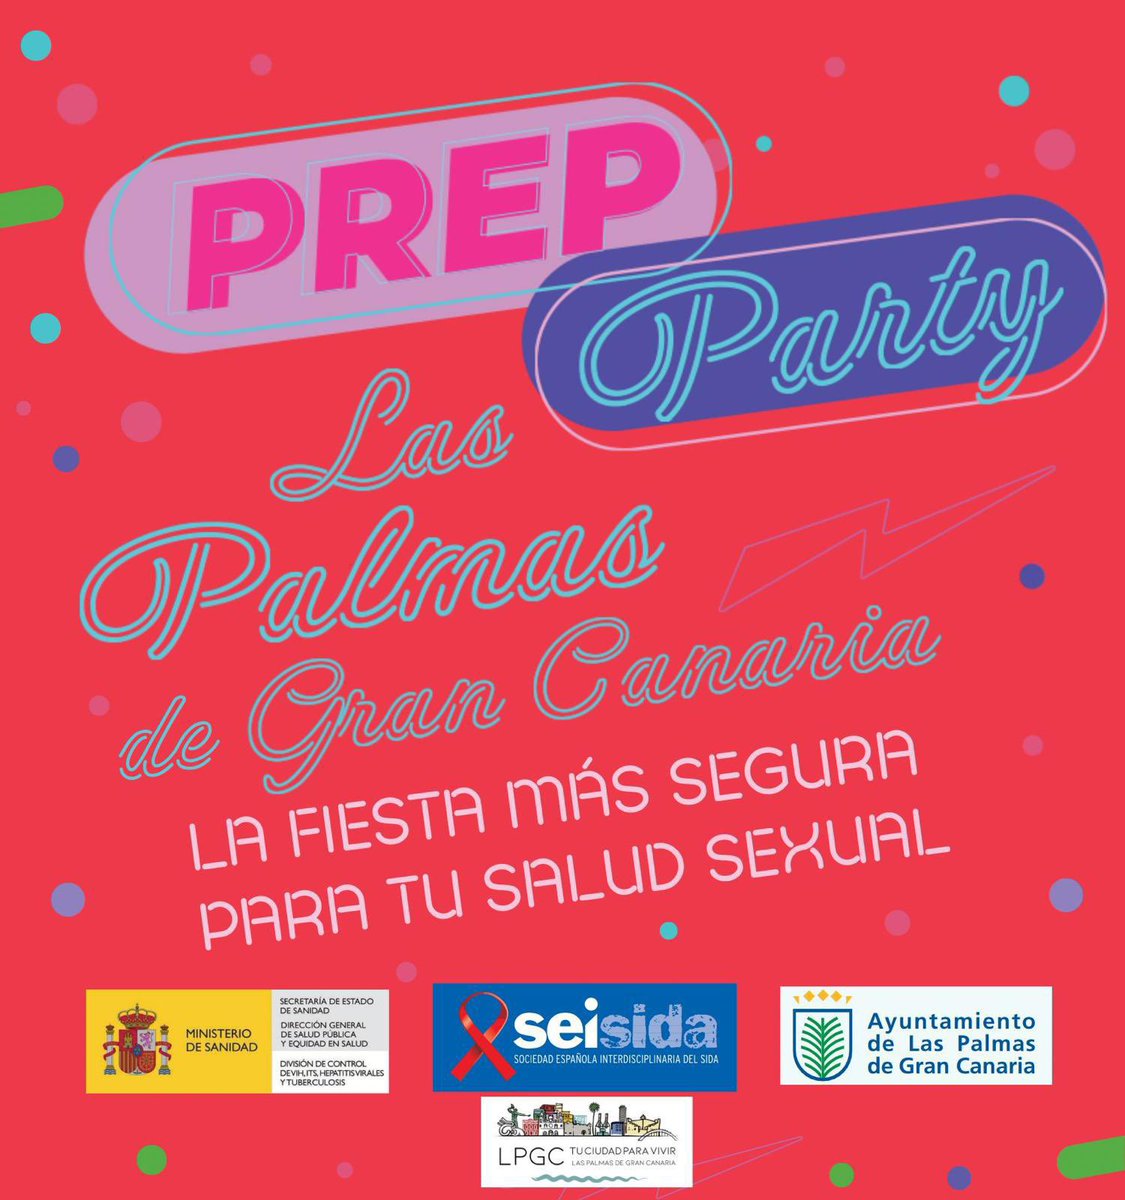 No te pierdas *PrEP Party Las Palmas de Gran Canaria* la fiesta en la que hablamos de PrEP como estrategia de prevención, combinada al VIH y de salud sexual gracias a la sociedad interdisciplinaria del sida (Seisida) y la División de control de VIH (Ministerio de sanidad) junto…